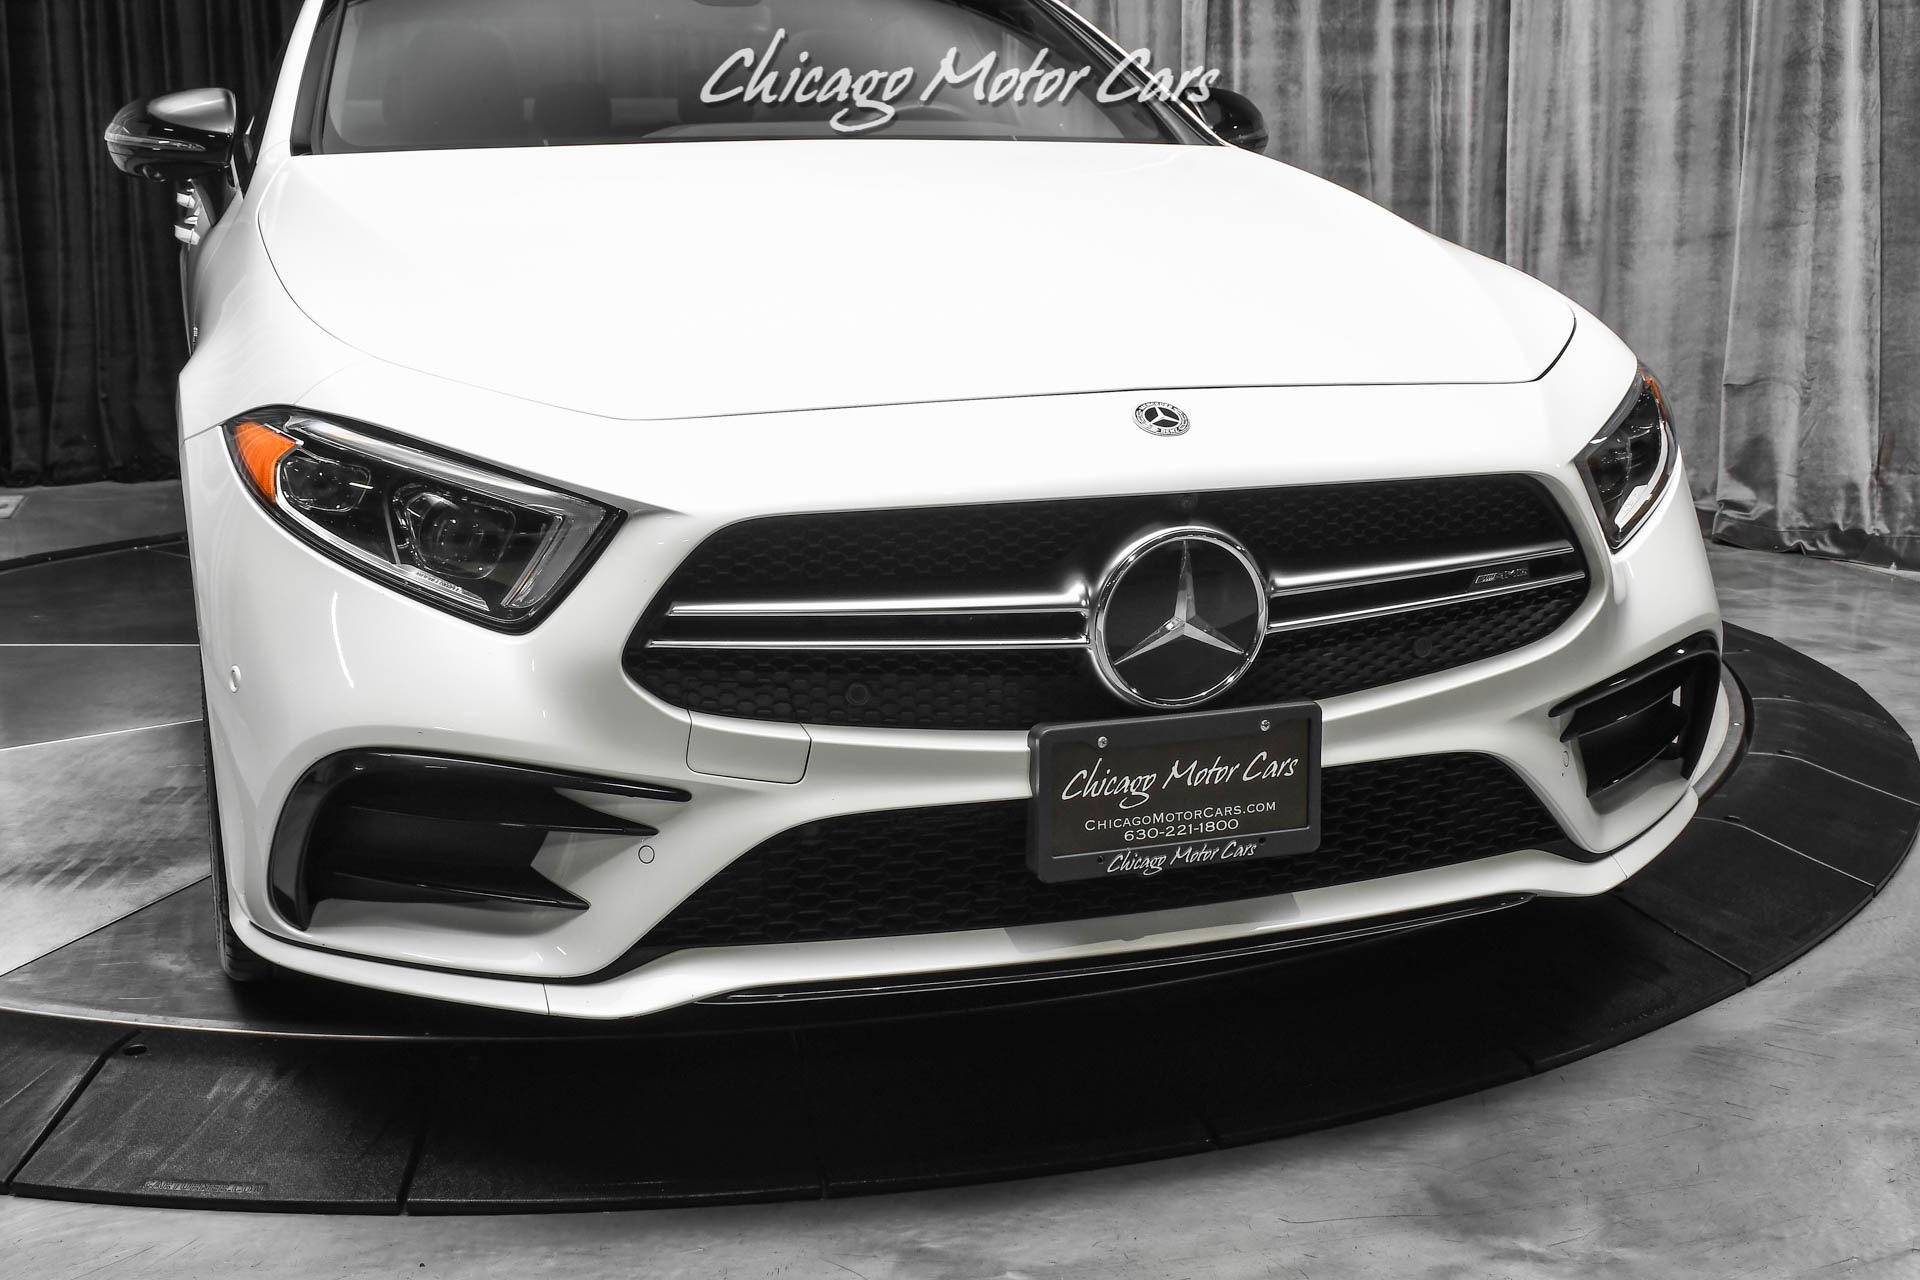 Used-2019-Mercedes-Benz-CLS53-AMG-4Matic-Sedan-Comfort-Pkg-Driver-Assist-Pkg-Night-Pkg-94K-MSRP